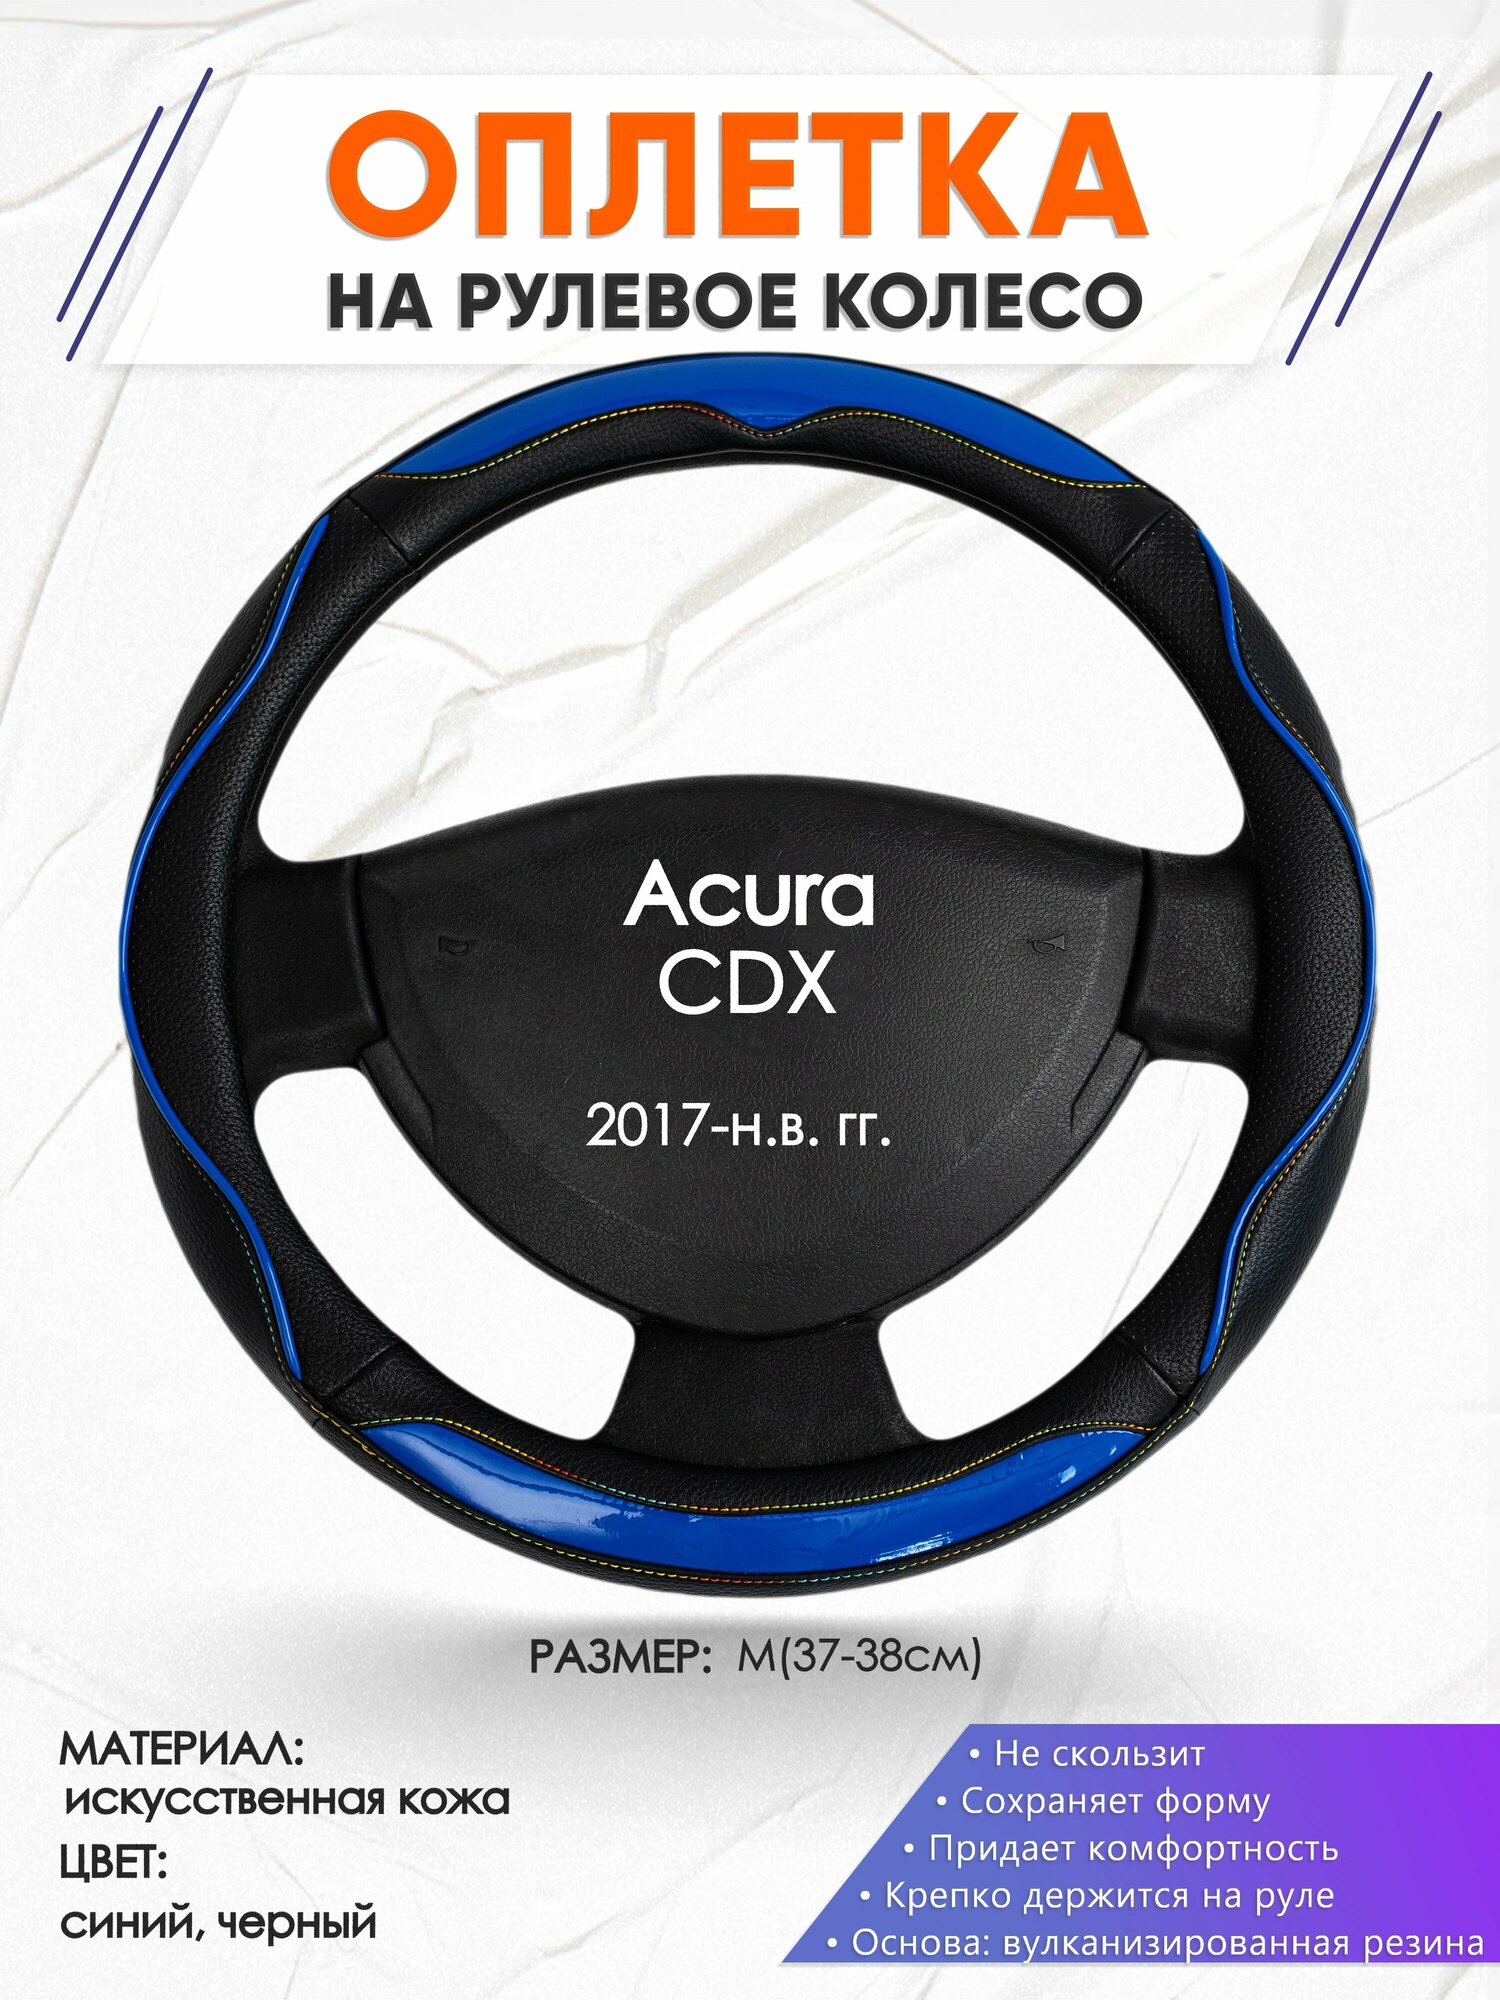 Оплетка наруль для Acura CDX(Акура СДХ) 2017-н.в. годов выпуска, размер M(37-38см), Искусственная кожа 11